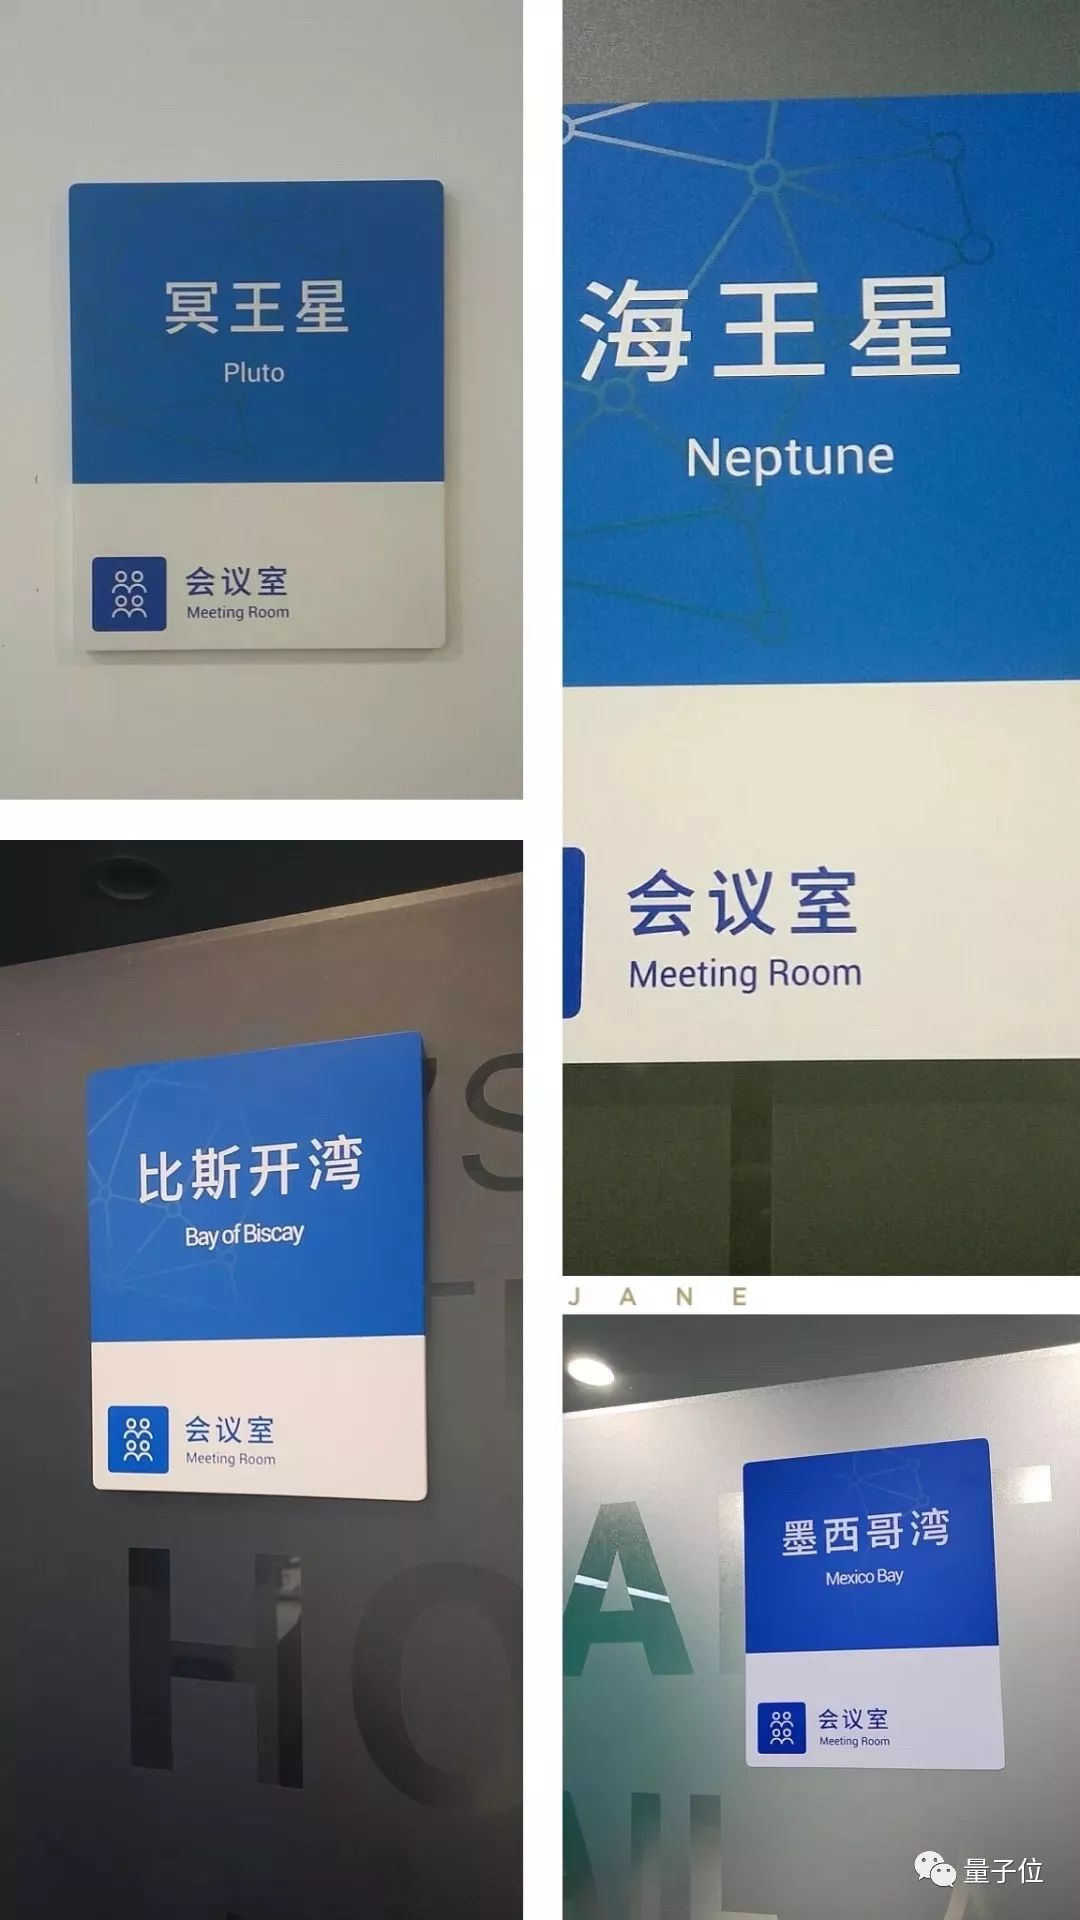 中国AI公司会议室取名简史